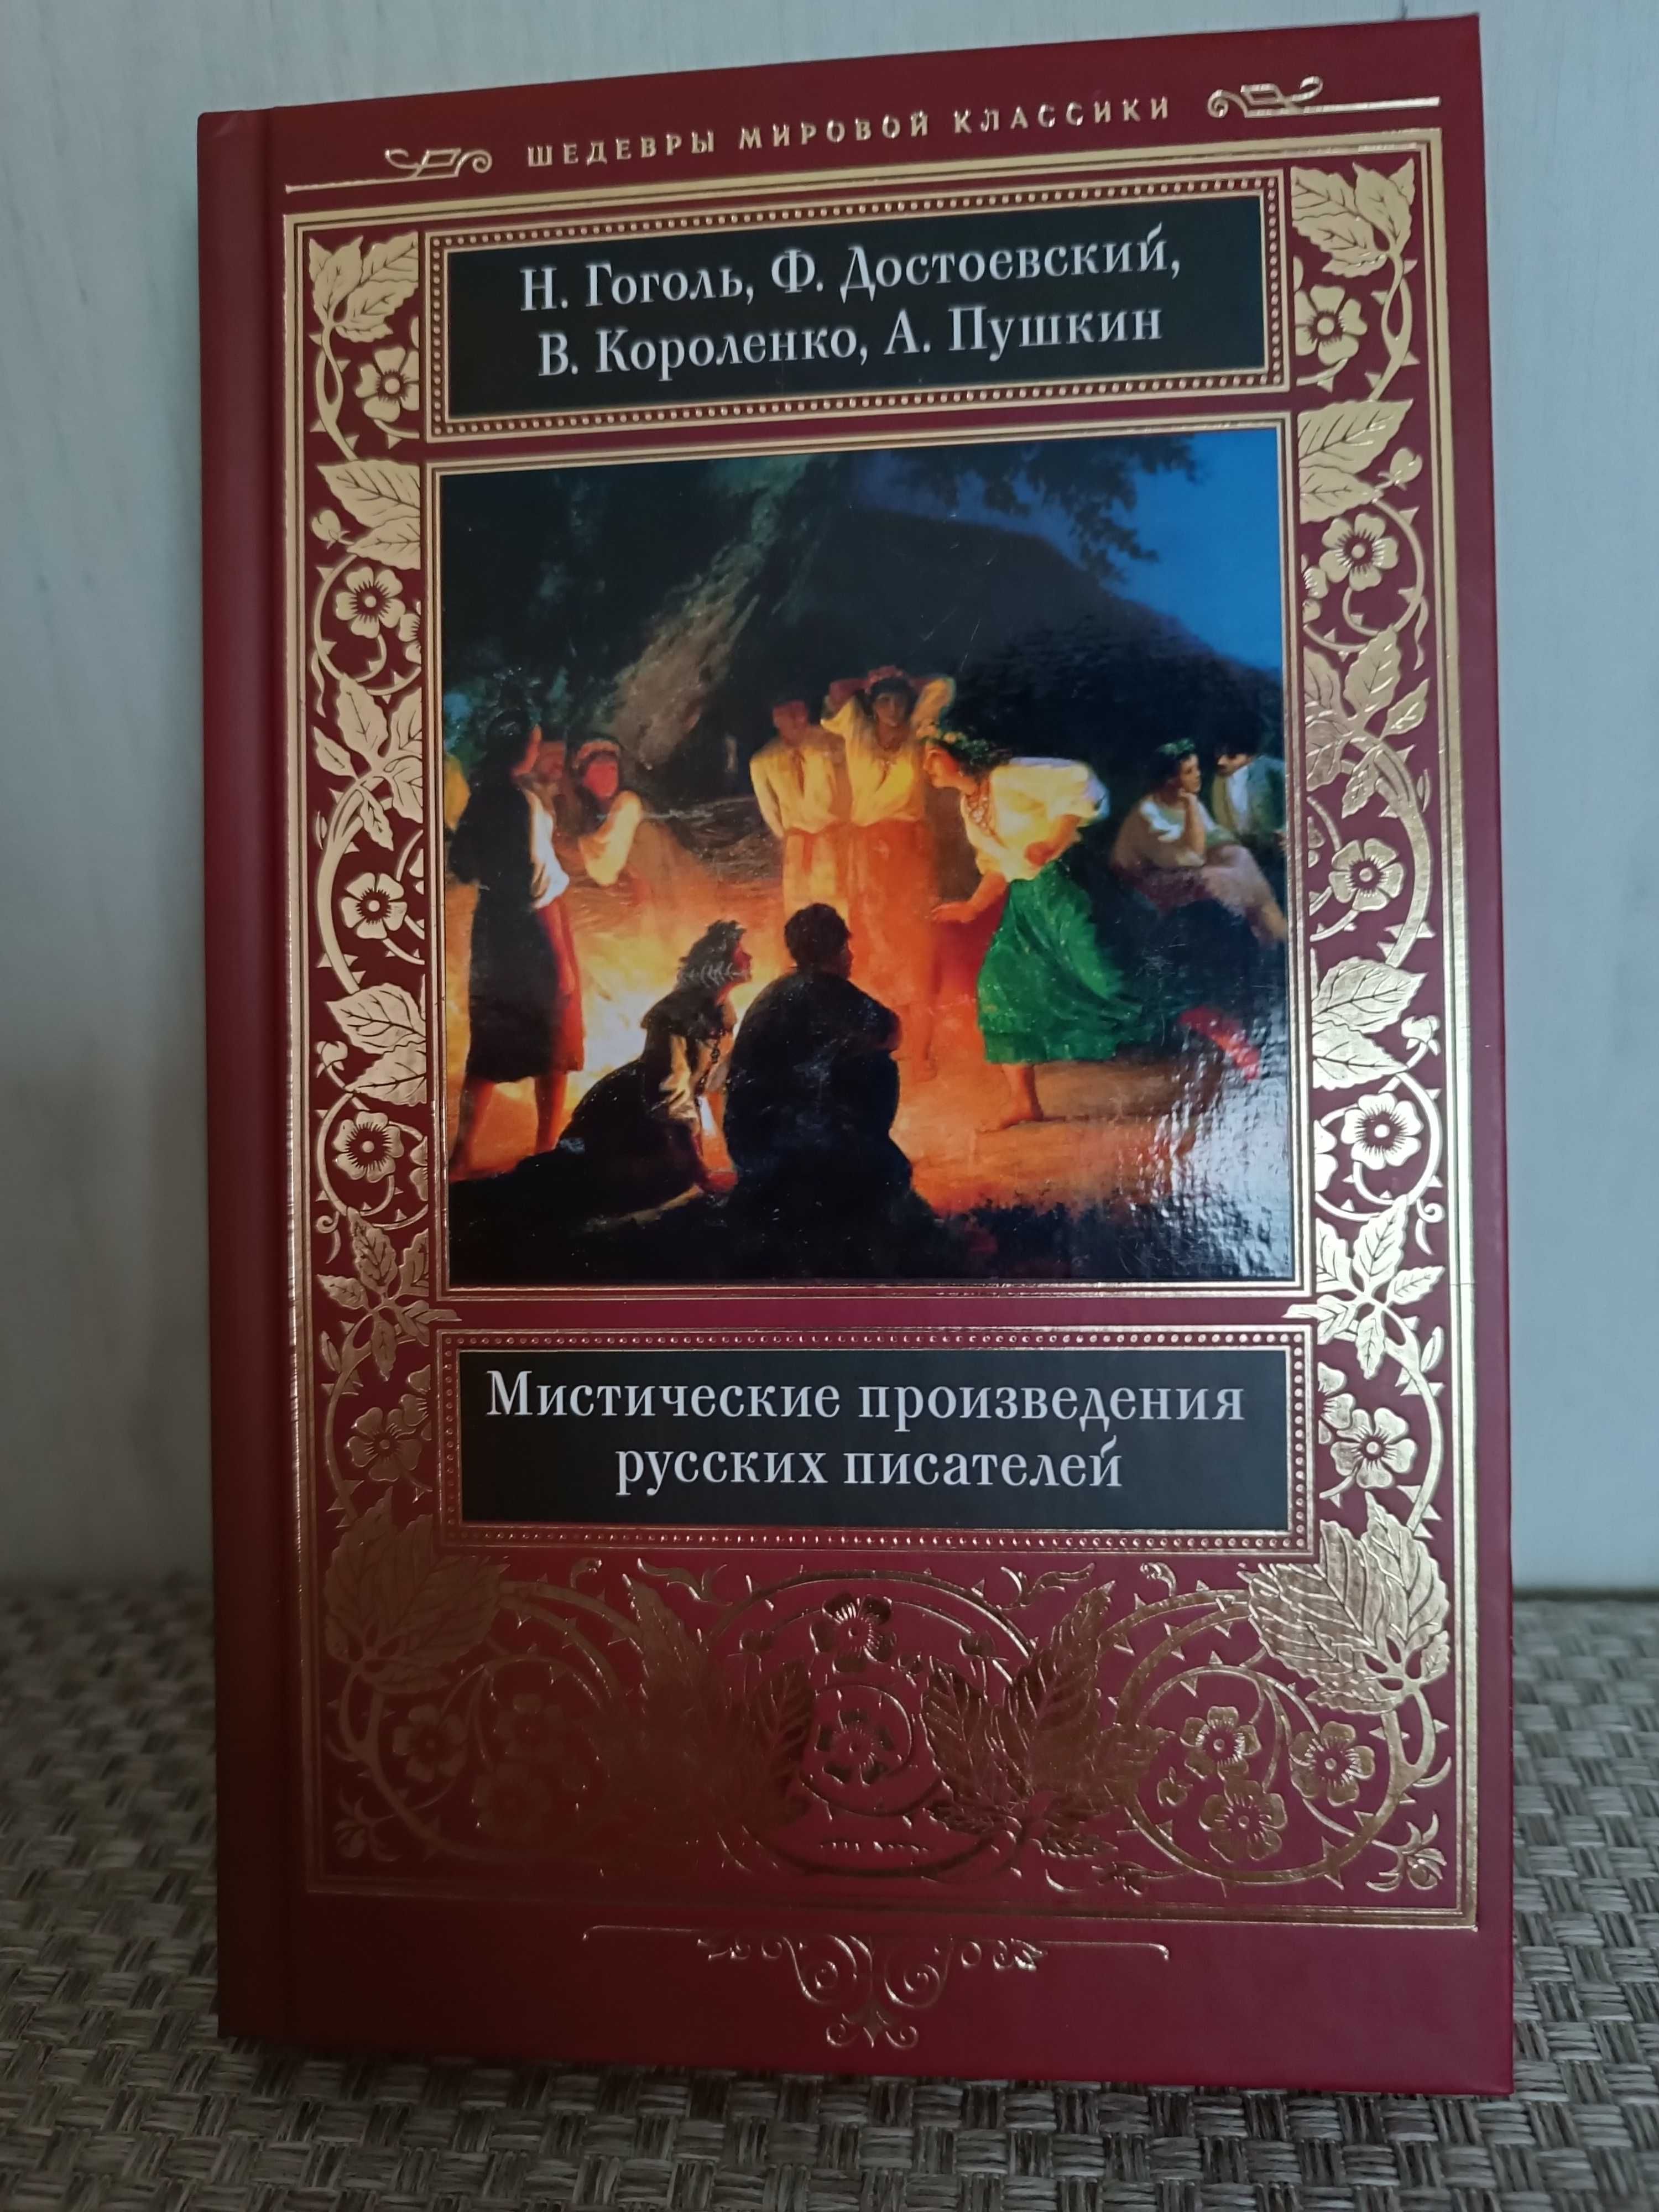 Мировая, русская классика, красивые издания